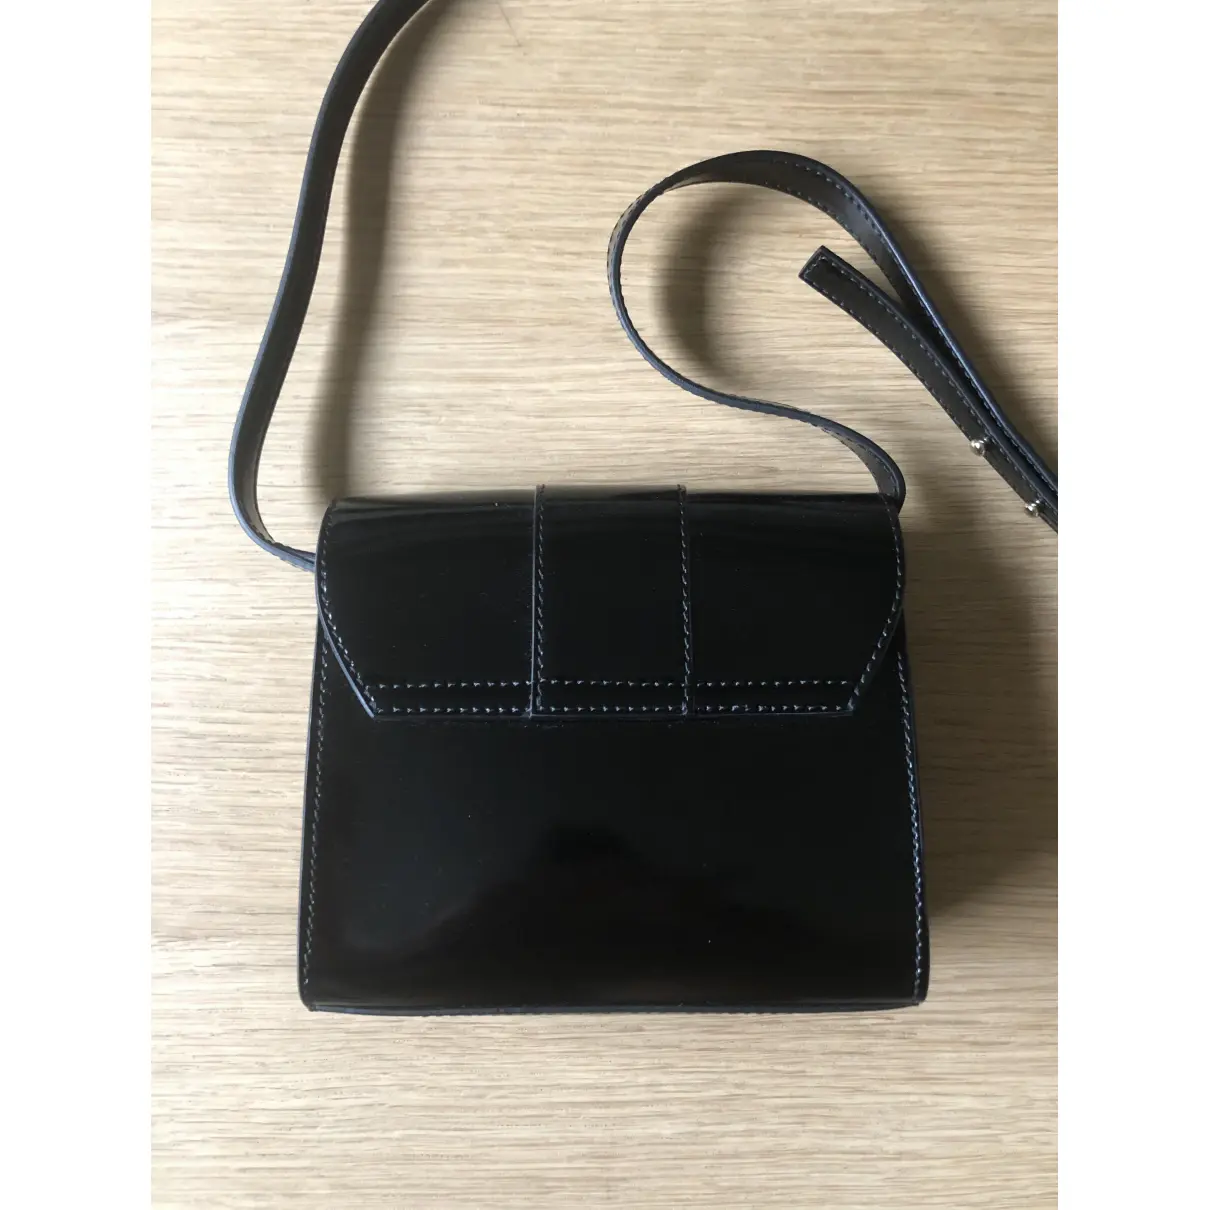 Buy Gianni Versace Leather handbag online